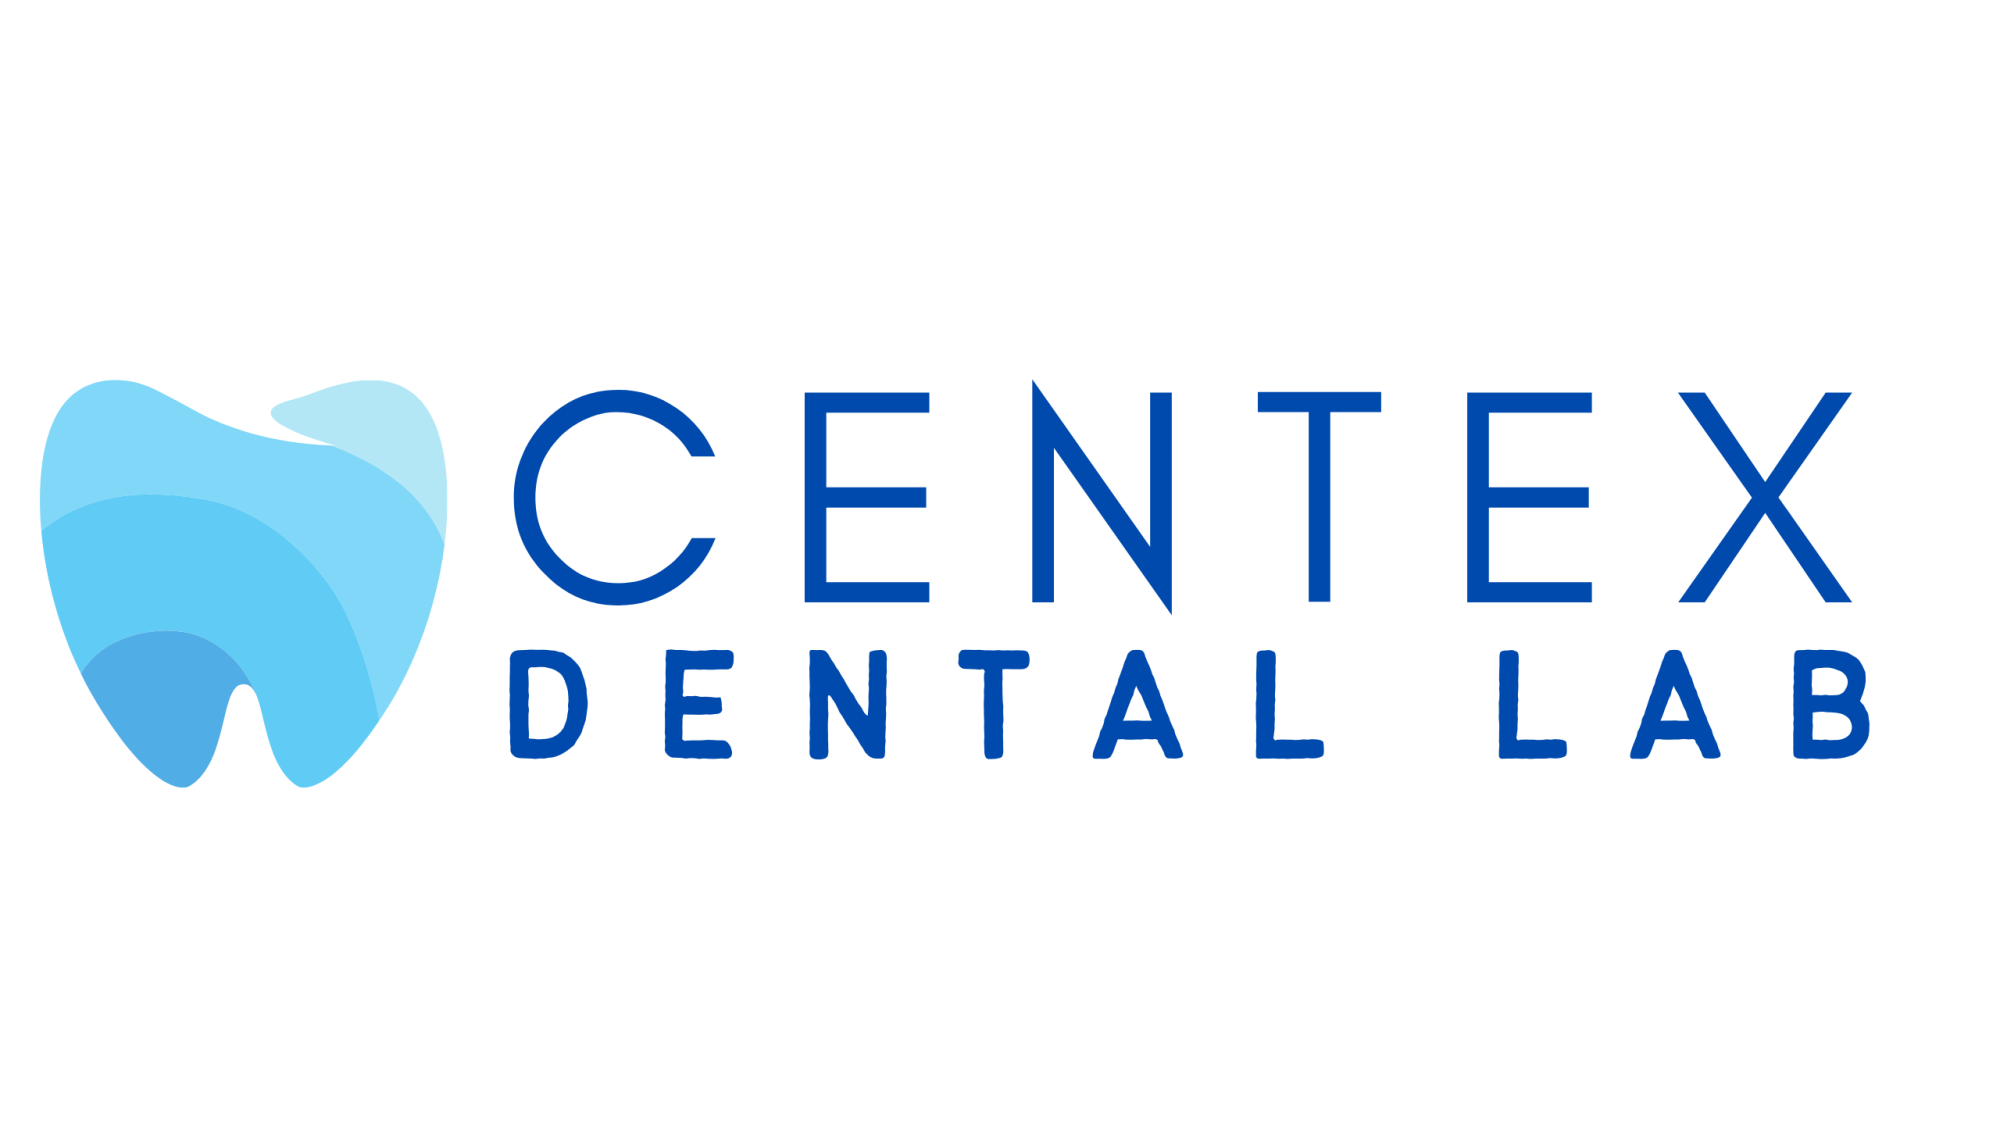 CENTEX Dental Lab